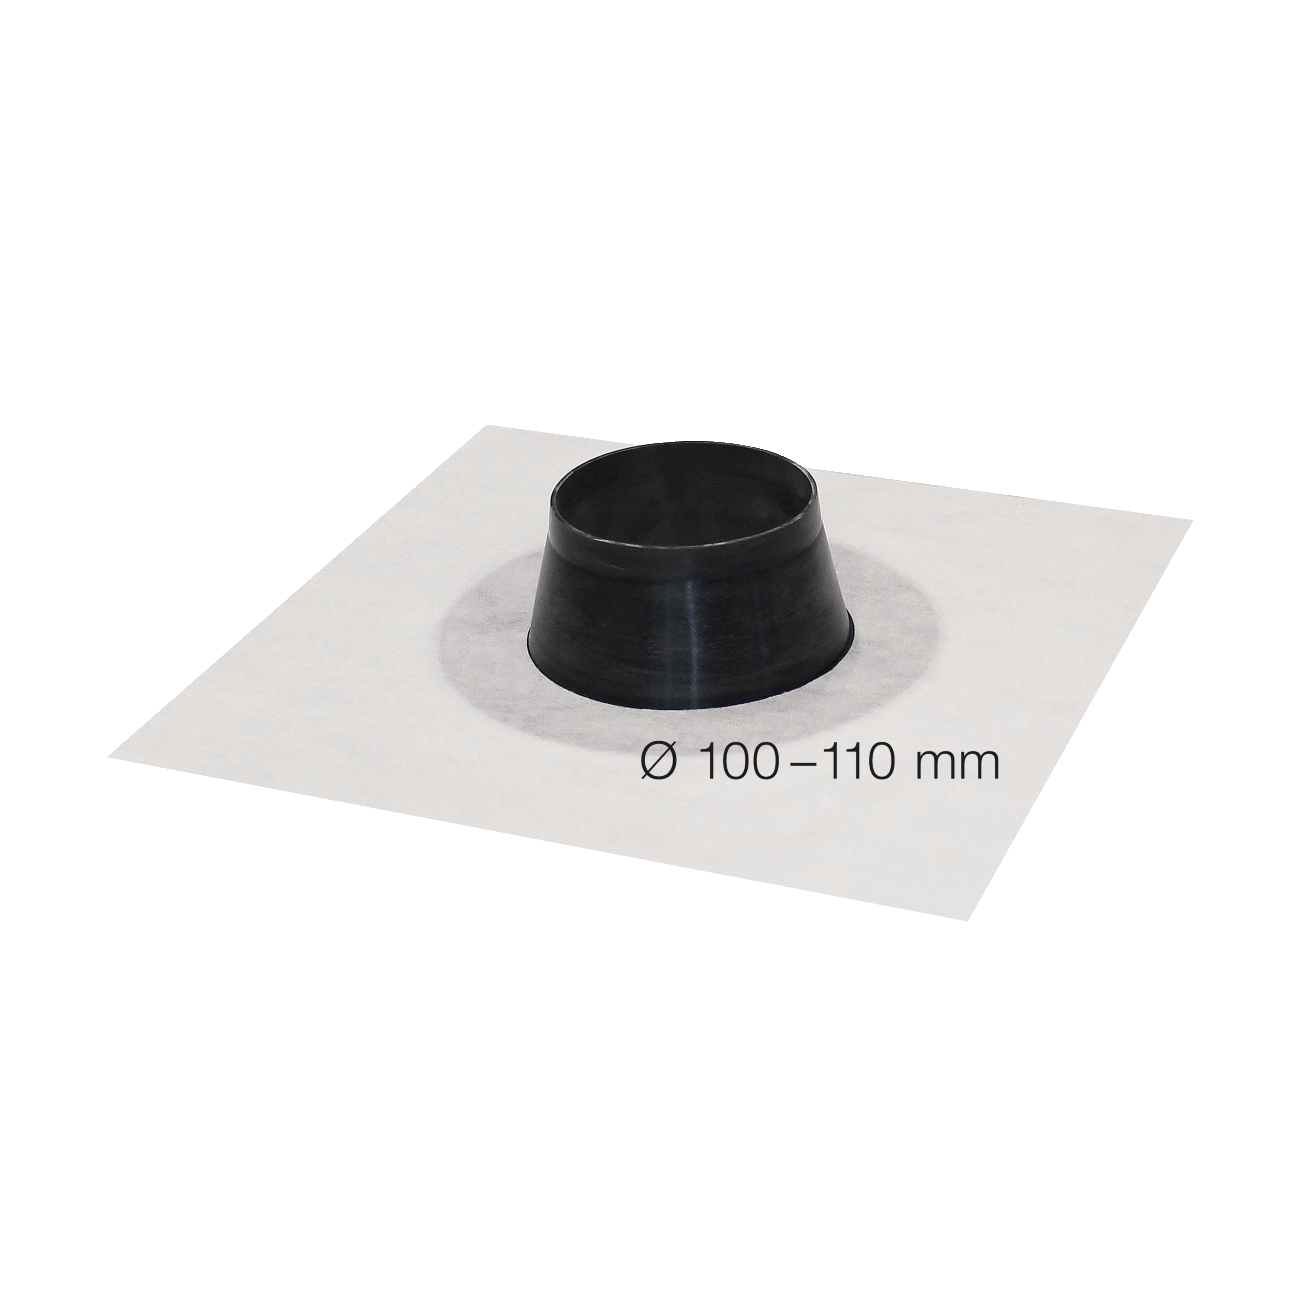 SIGA Fentrim manguito blanco diámetro 100-110mmm, para penetración de tuberías